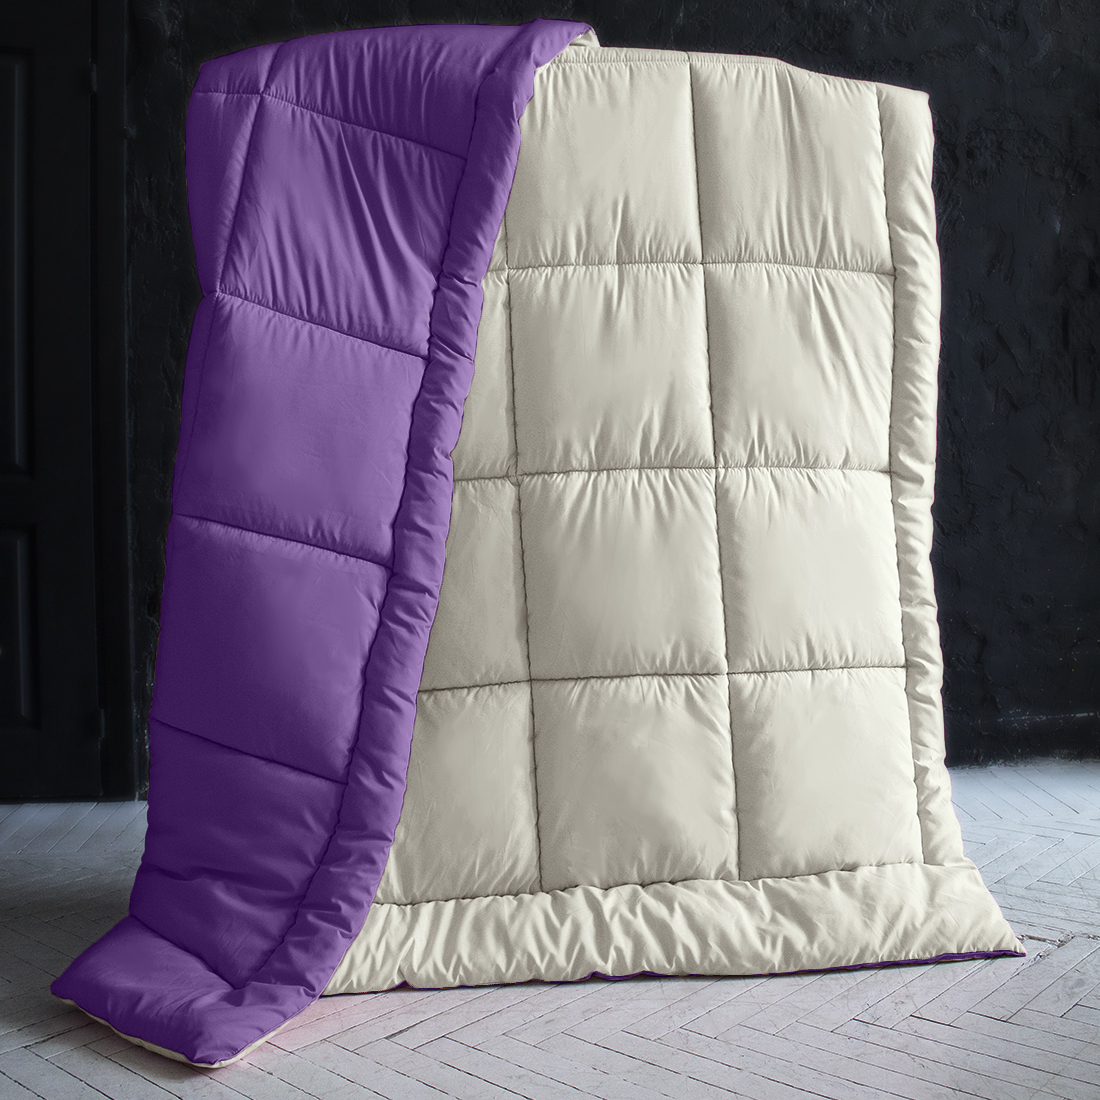 Одеяло MultiColor Цвет: Ванильный/Темно-Фиолетовый (220х240 см), размер 220х240 см pva410833 Одеяло MultiColor Цвет: Ванильный/Темно-Фиолетовый (220х240 см) - фото 1